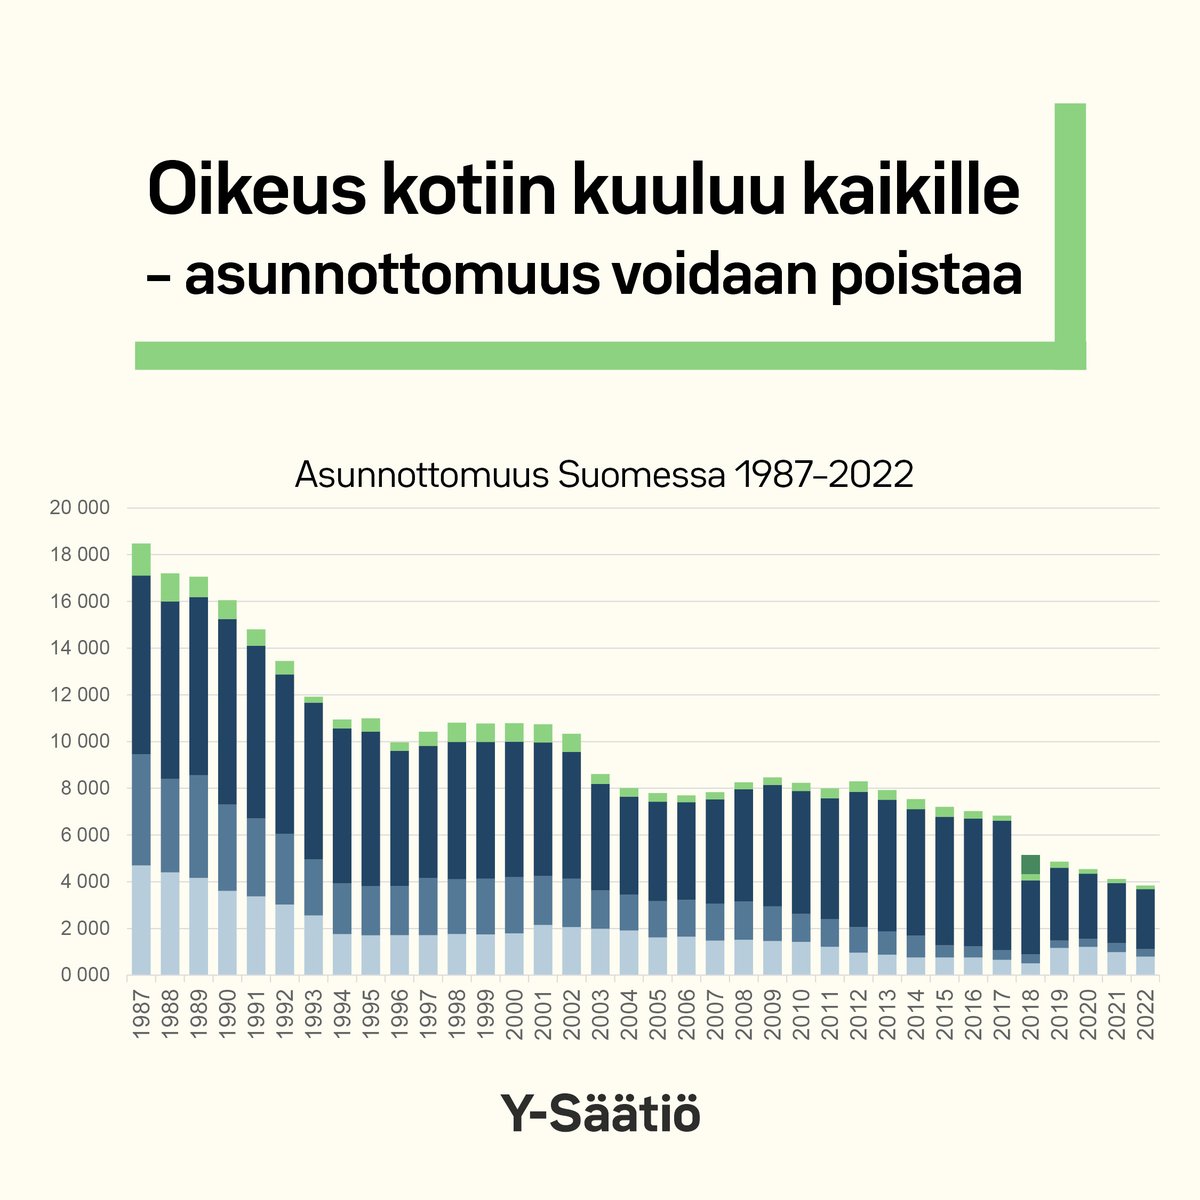 Asunnottomuutta on onnistuttu vähentämään Suomessa, mutta vailla vakinaista asuntoa on edelleen 3686 henkilöä. Asunnottomuustyön onnistumiset osoittavat, että asunnottomuuden poistaminen on mahdollista. Y-Säätiössä teemme töitä, jotta jokaisella on koti. #asunnottomienyö